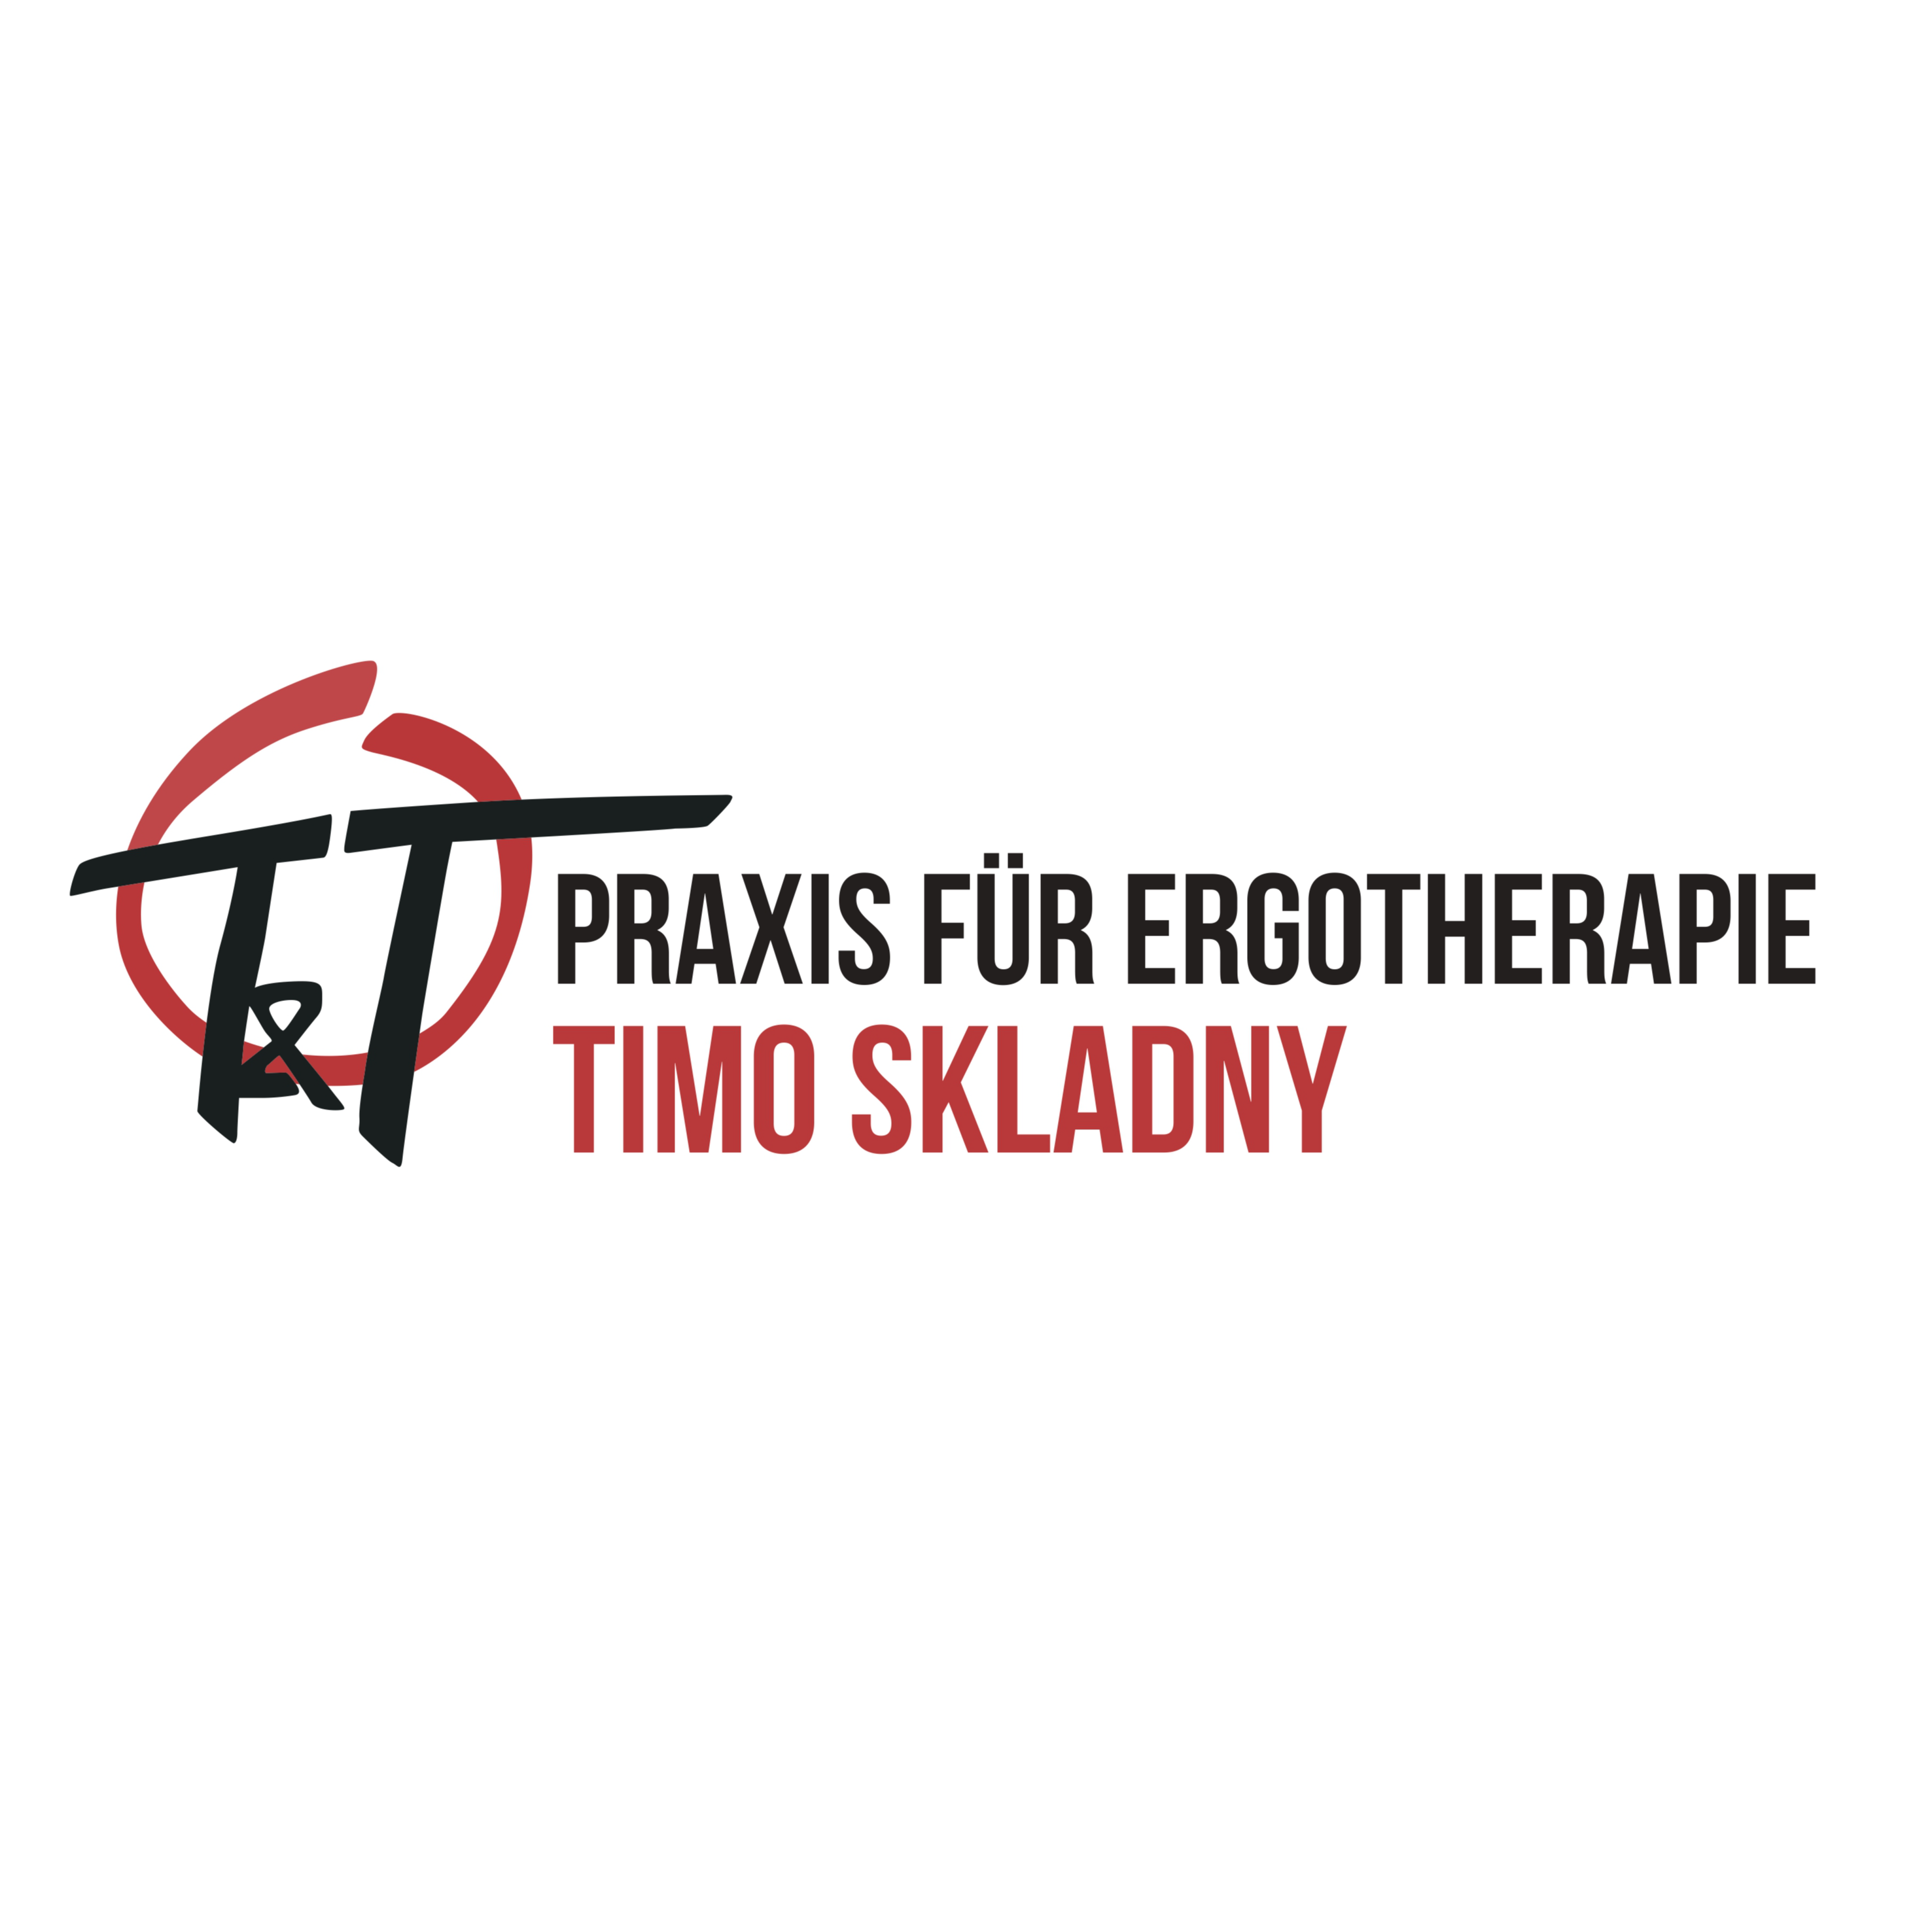 Praxis für Ergotherapie T&T Timo Skladny in Regenstauf - Logo